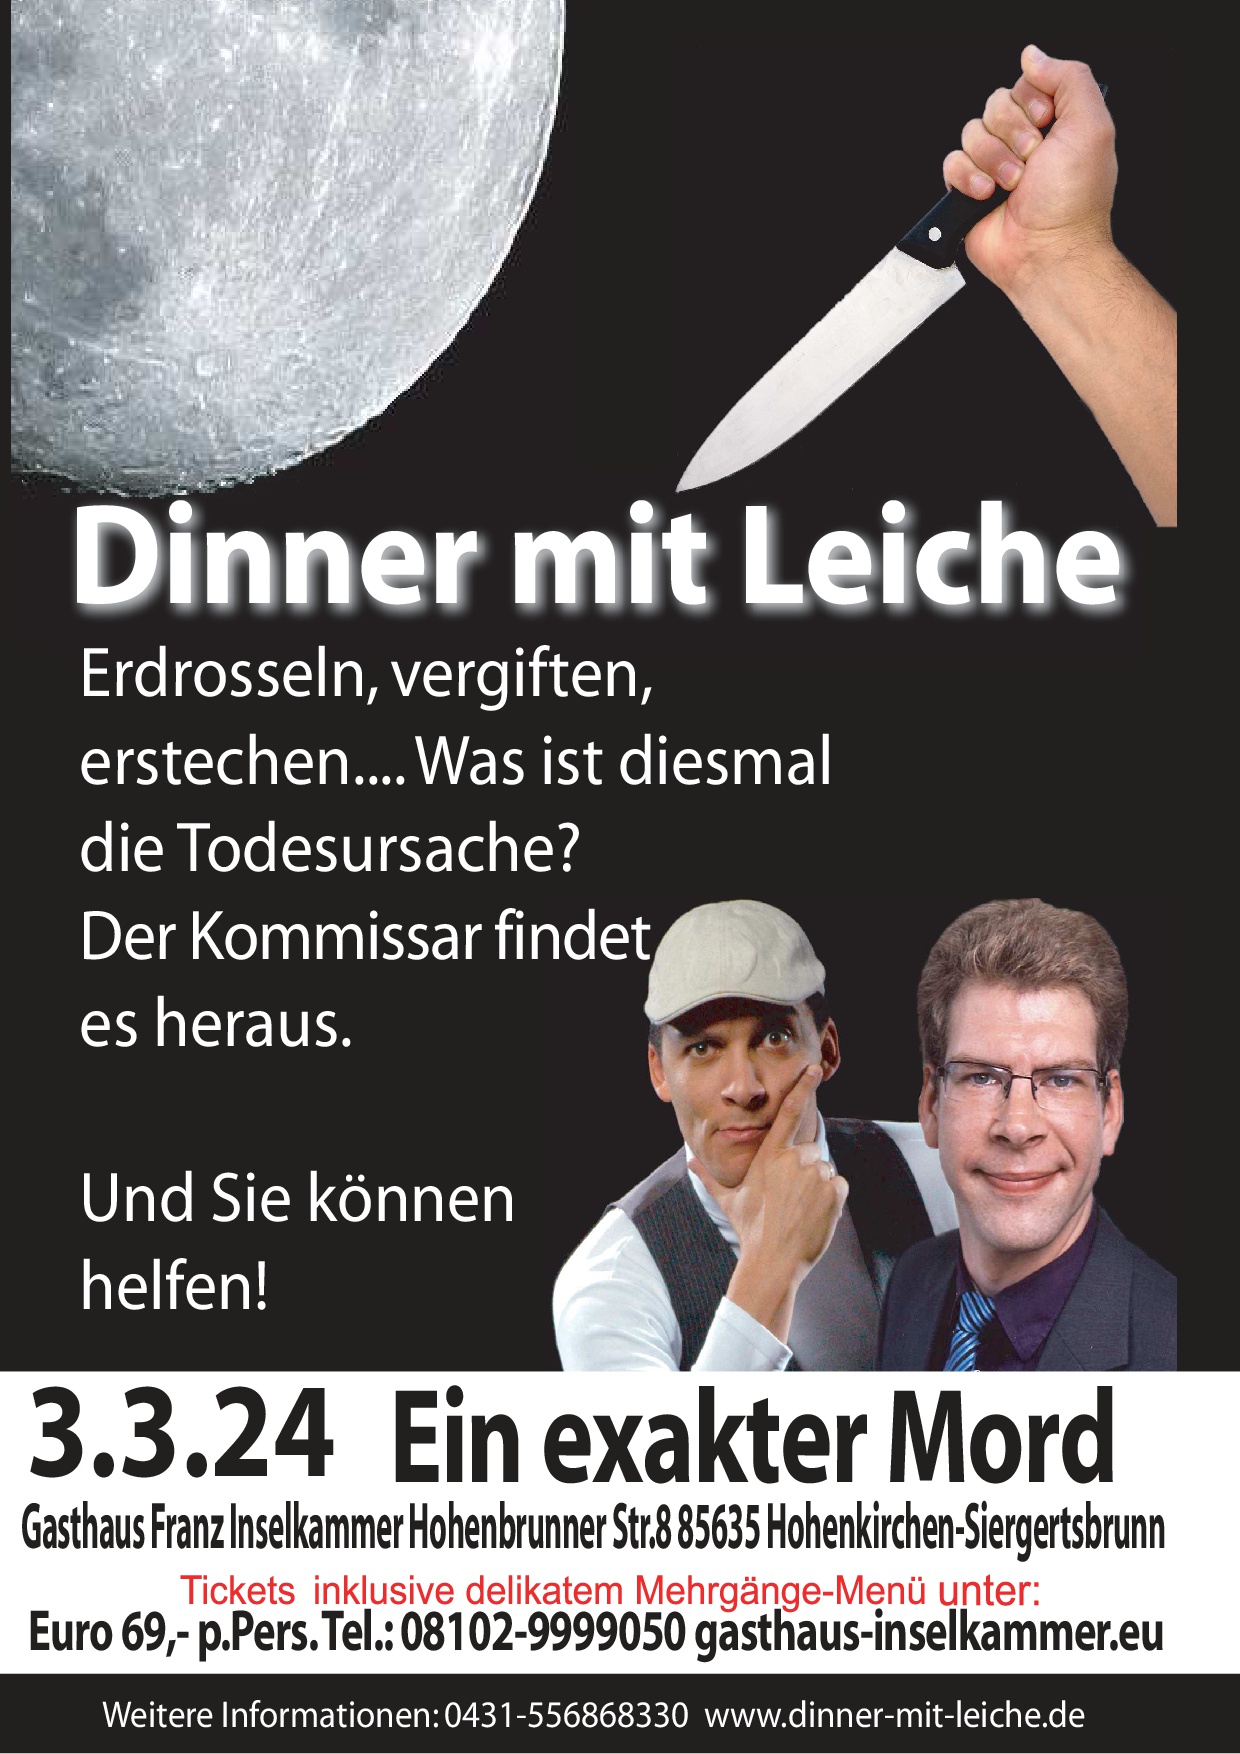 Dinner mit Leiche - Ein exakter Mord im Gasthaus Franz Inselkammer